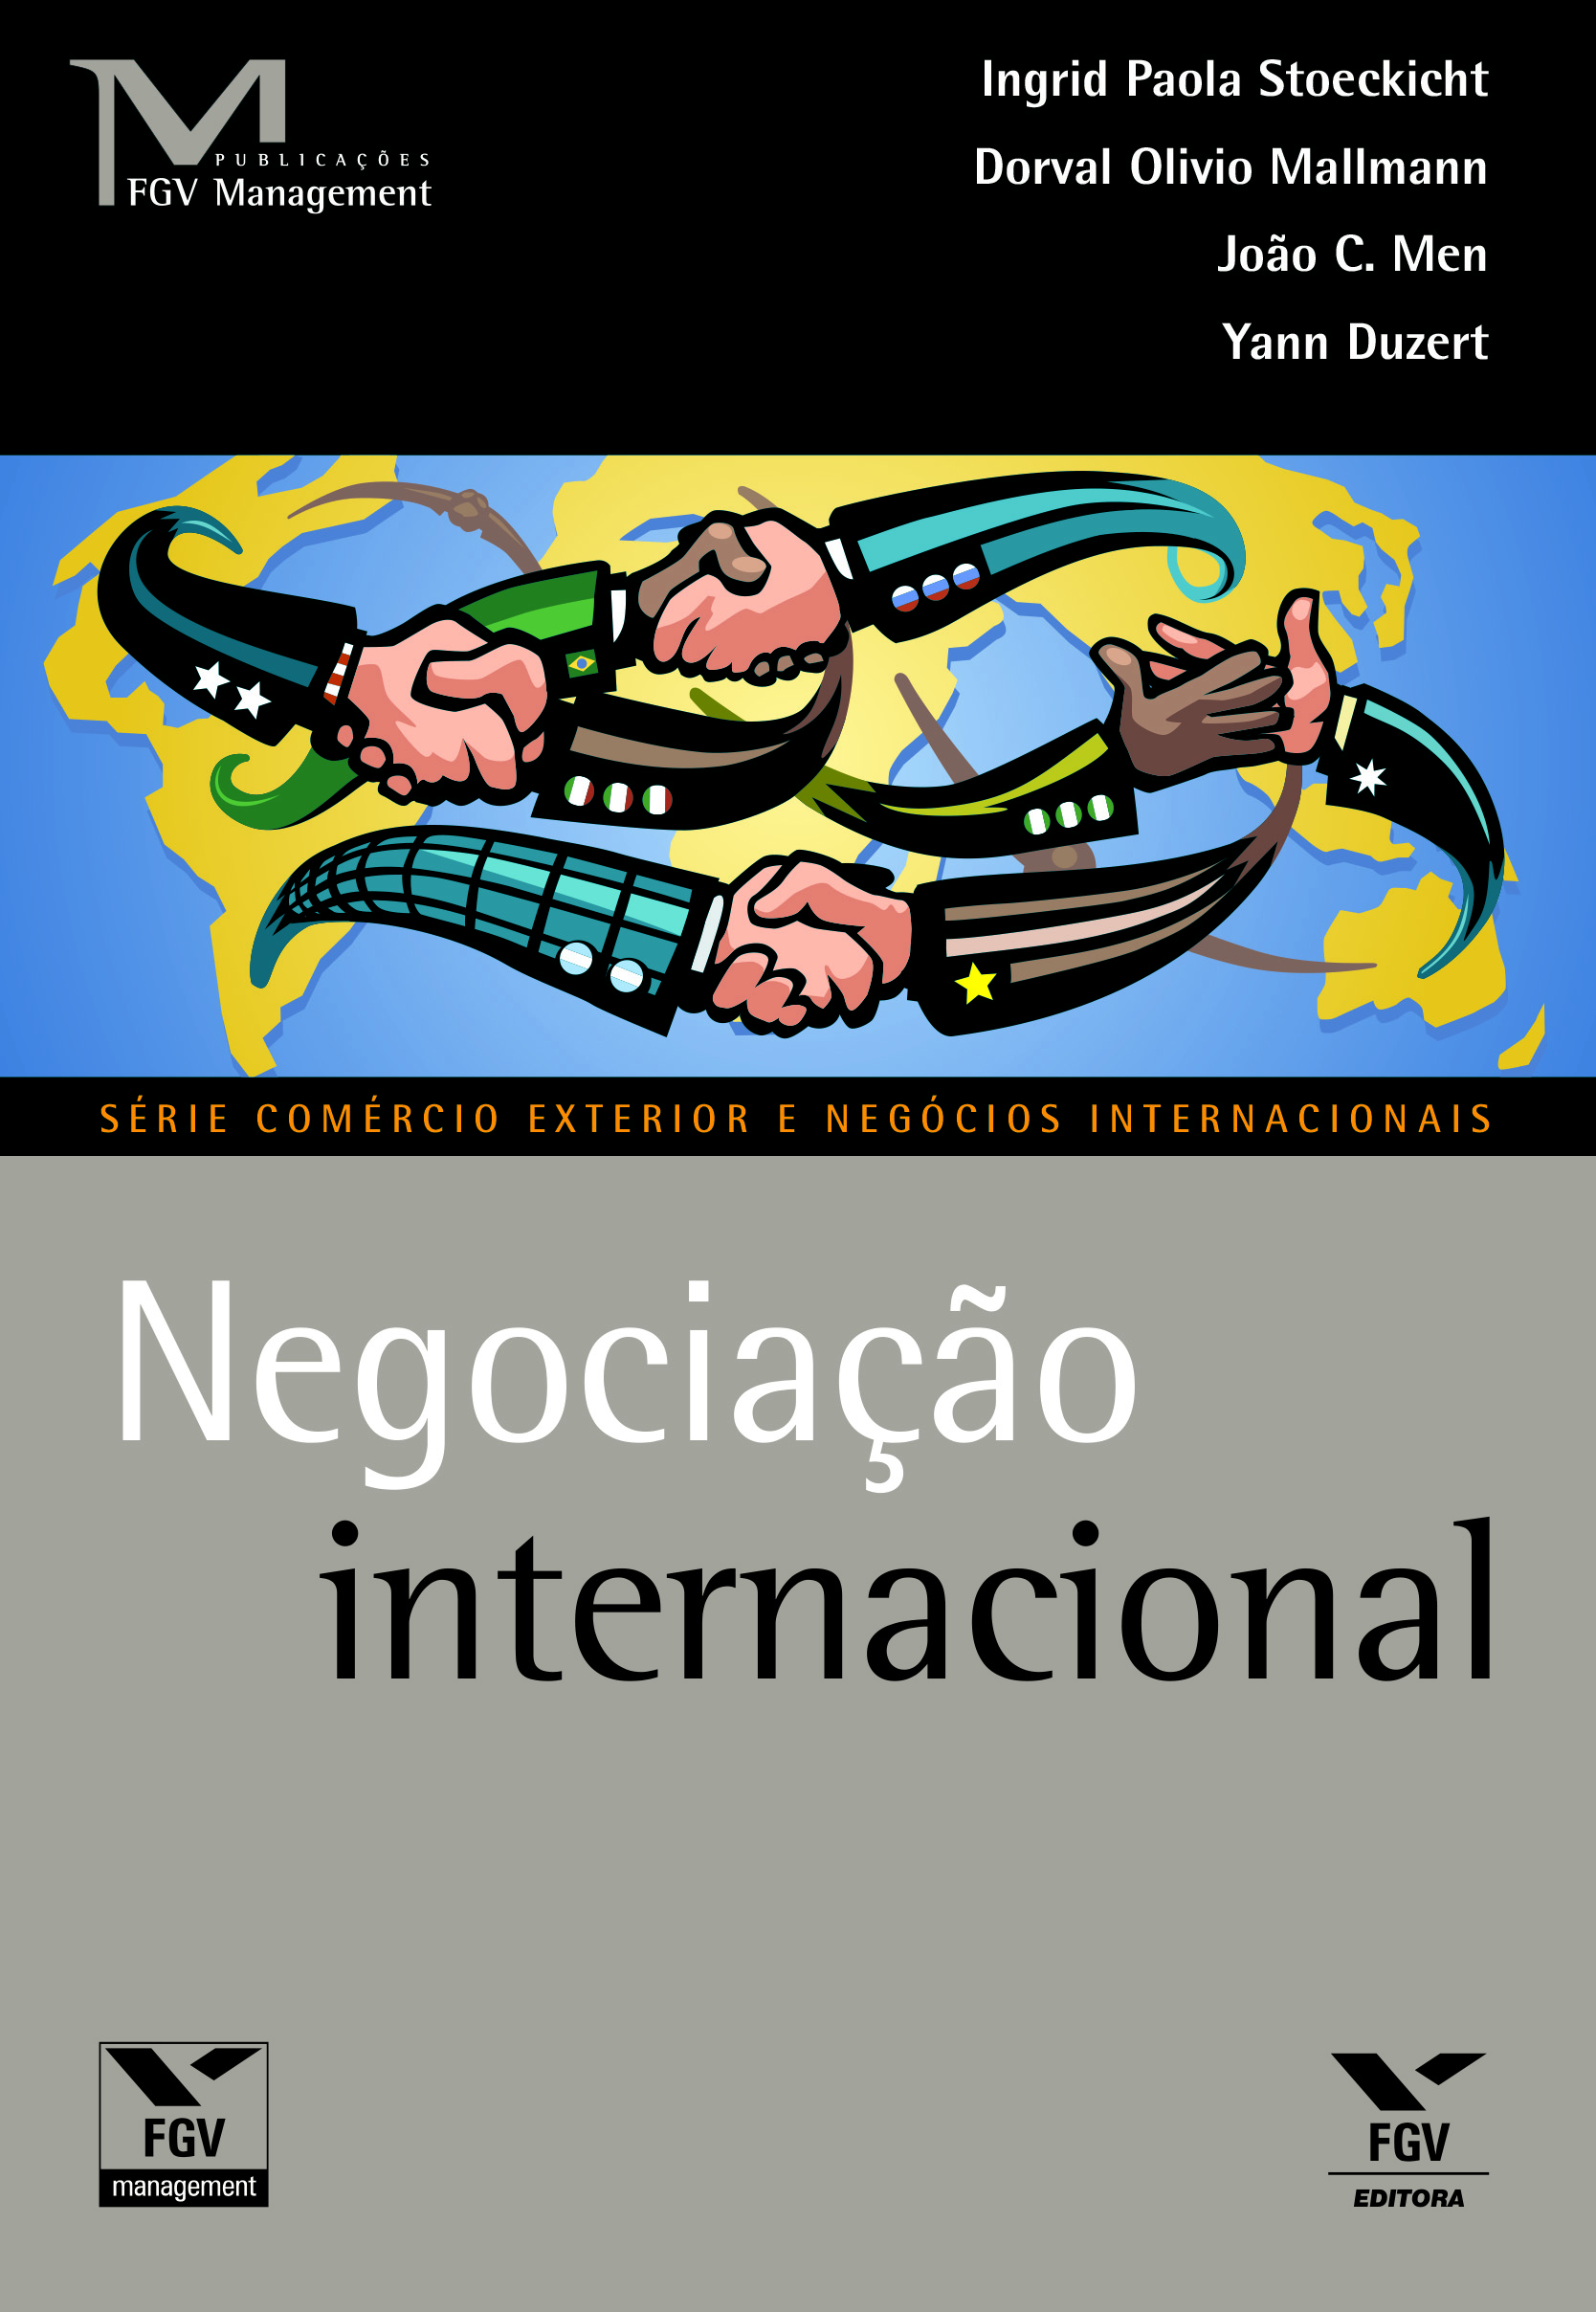 Negociação internacional - 01.cdr